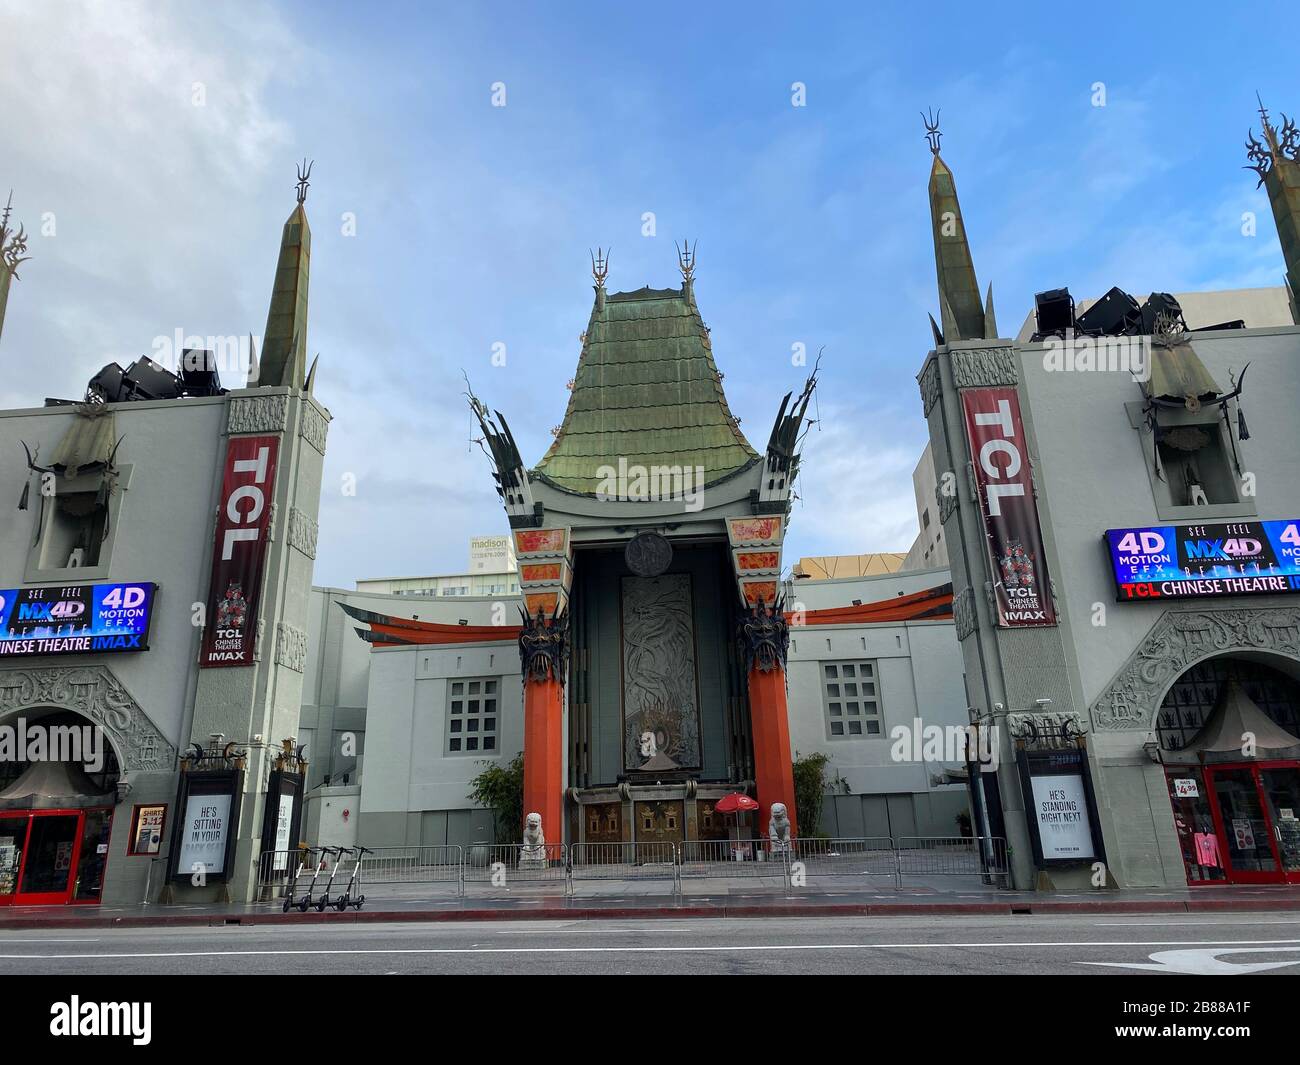 Il famoso punto di riferimento dell'Hollywood Chinese Theatre è di solito affollato di turisti completamente vuoti a causa dell'epidemia del virus corona. Foto Stock